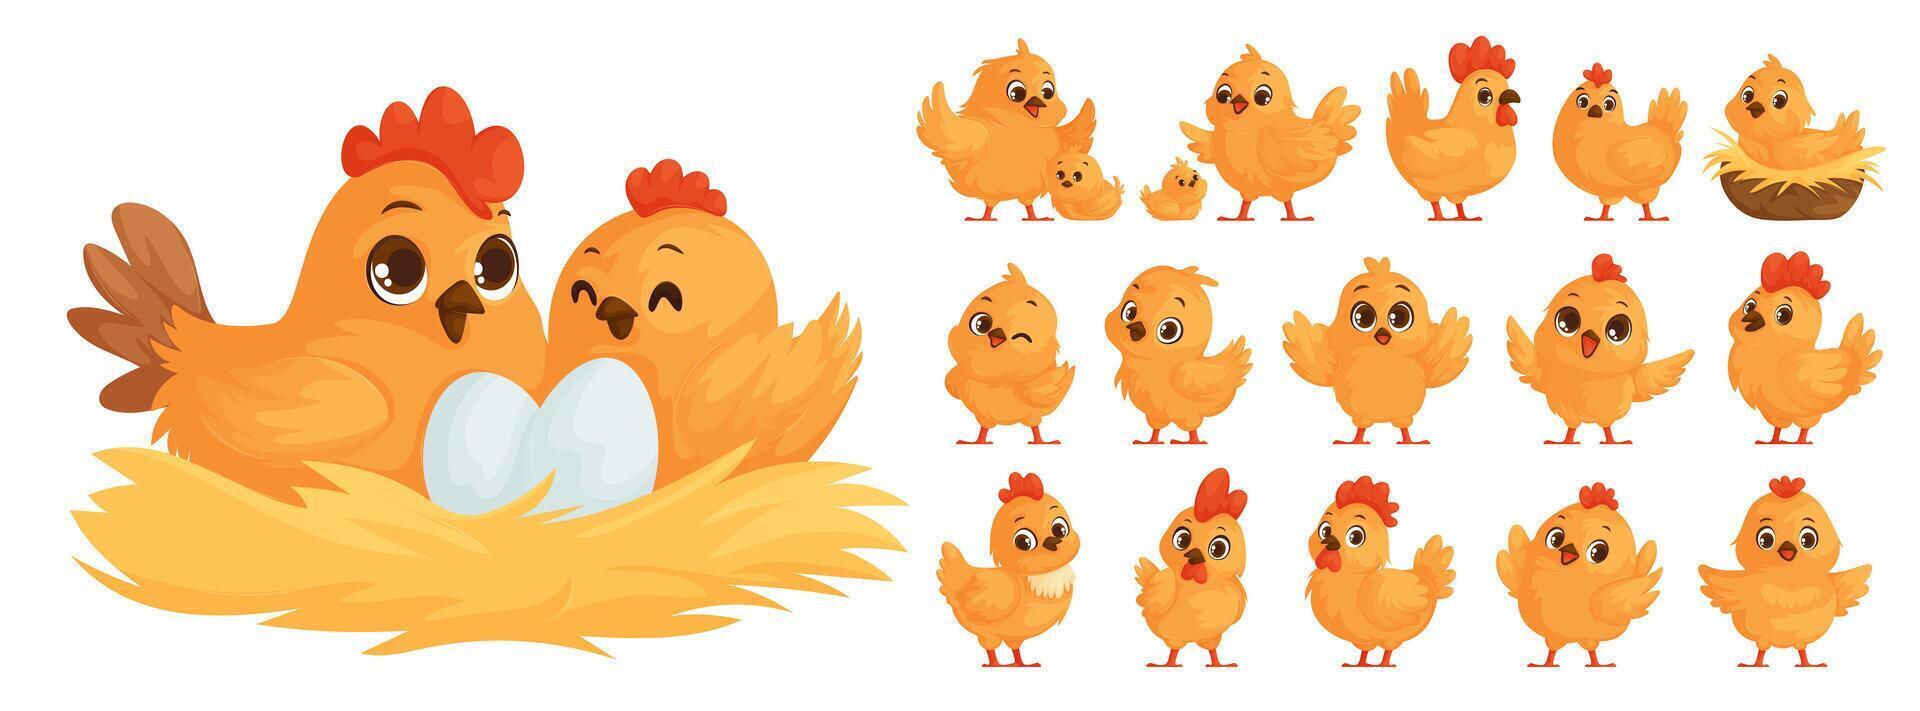 grande conjunto de pollo familia en dibujos animados estilo. amarillo pollos, gallina escotillas huevos. madre gallina y pollitos grande y pequeño gallos pollo y gallo en el nido. vector